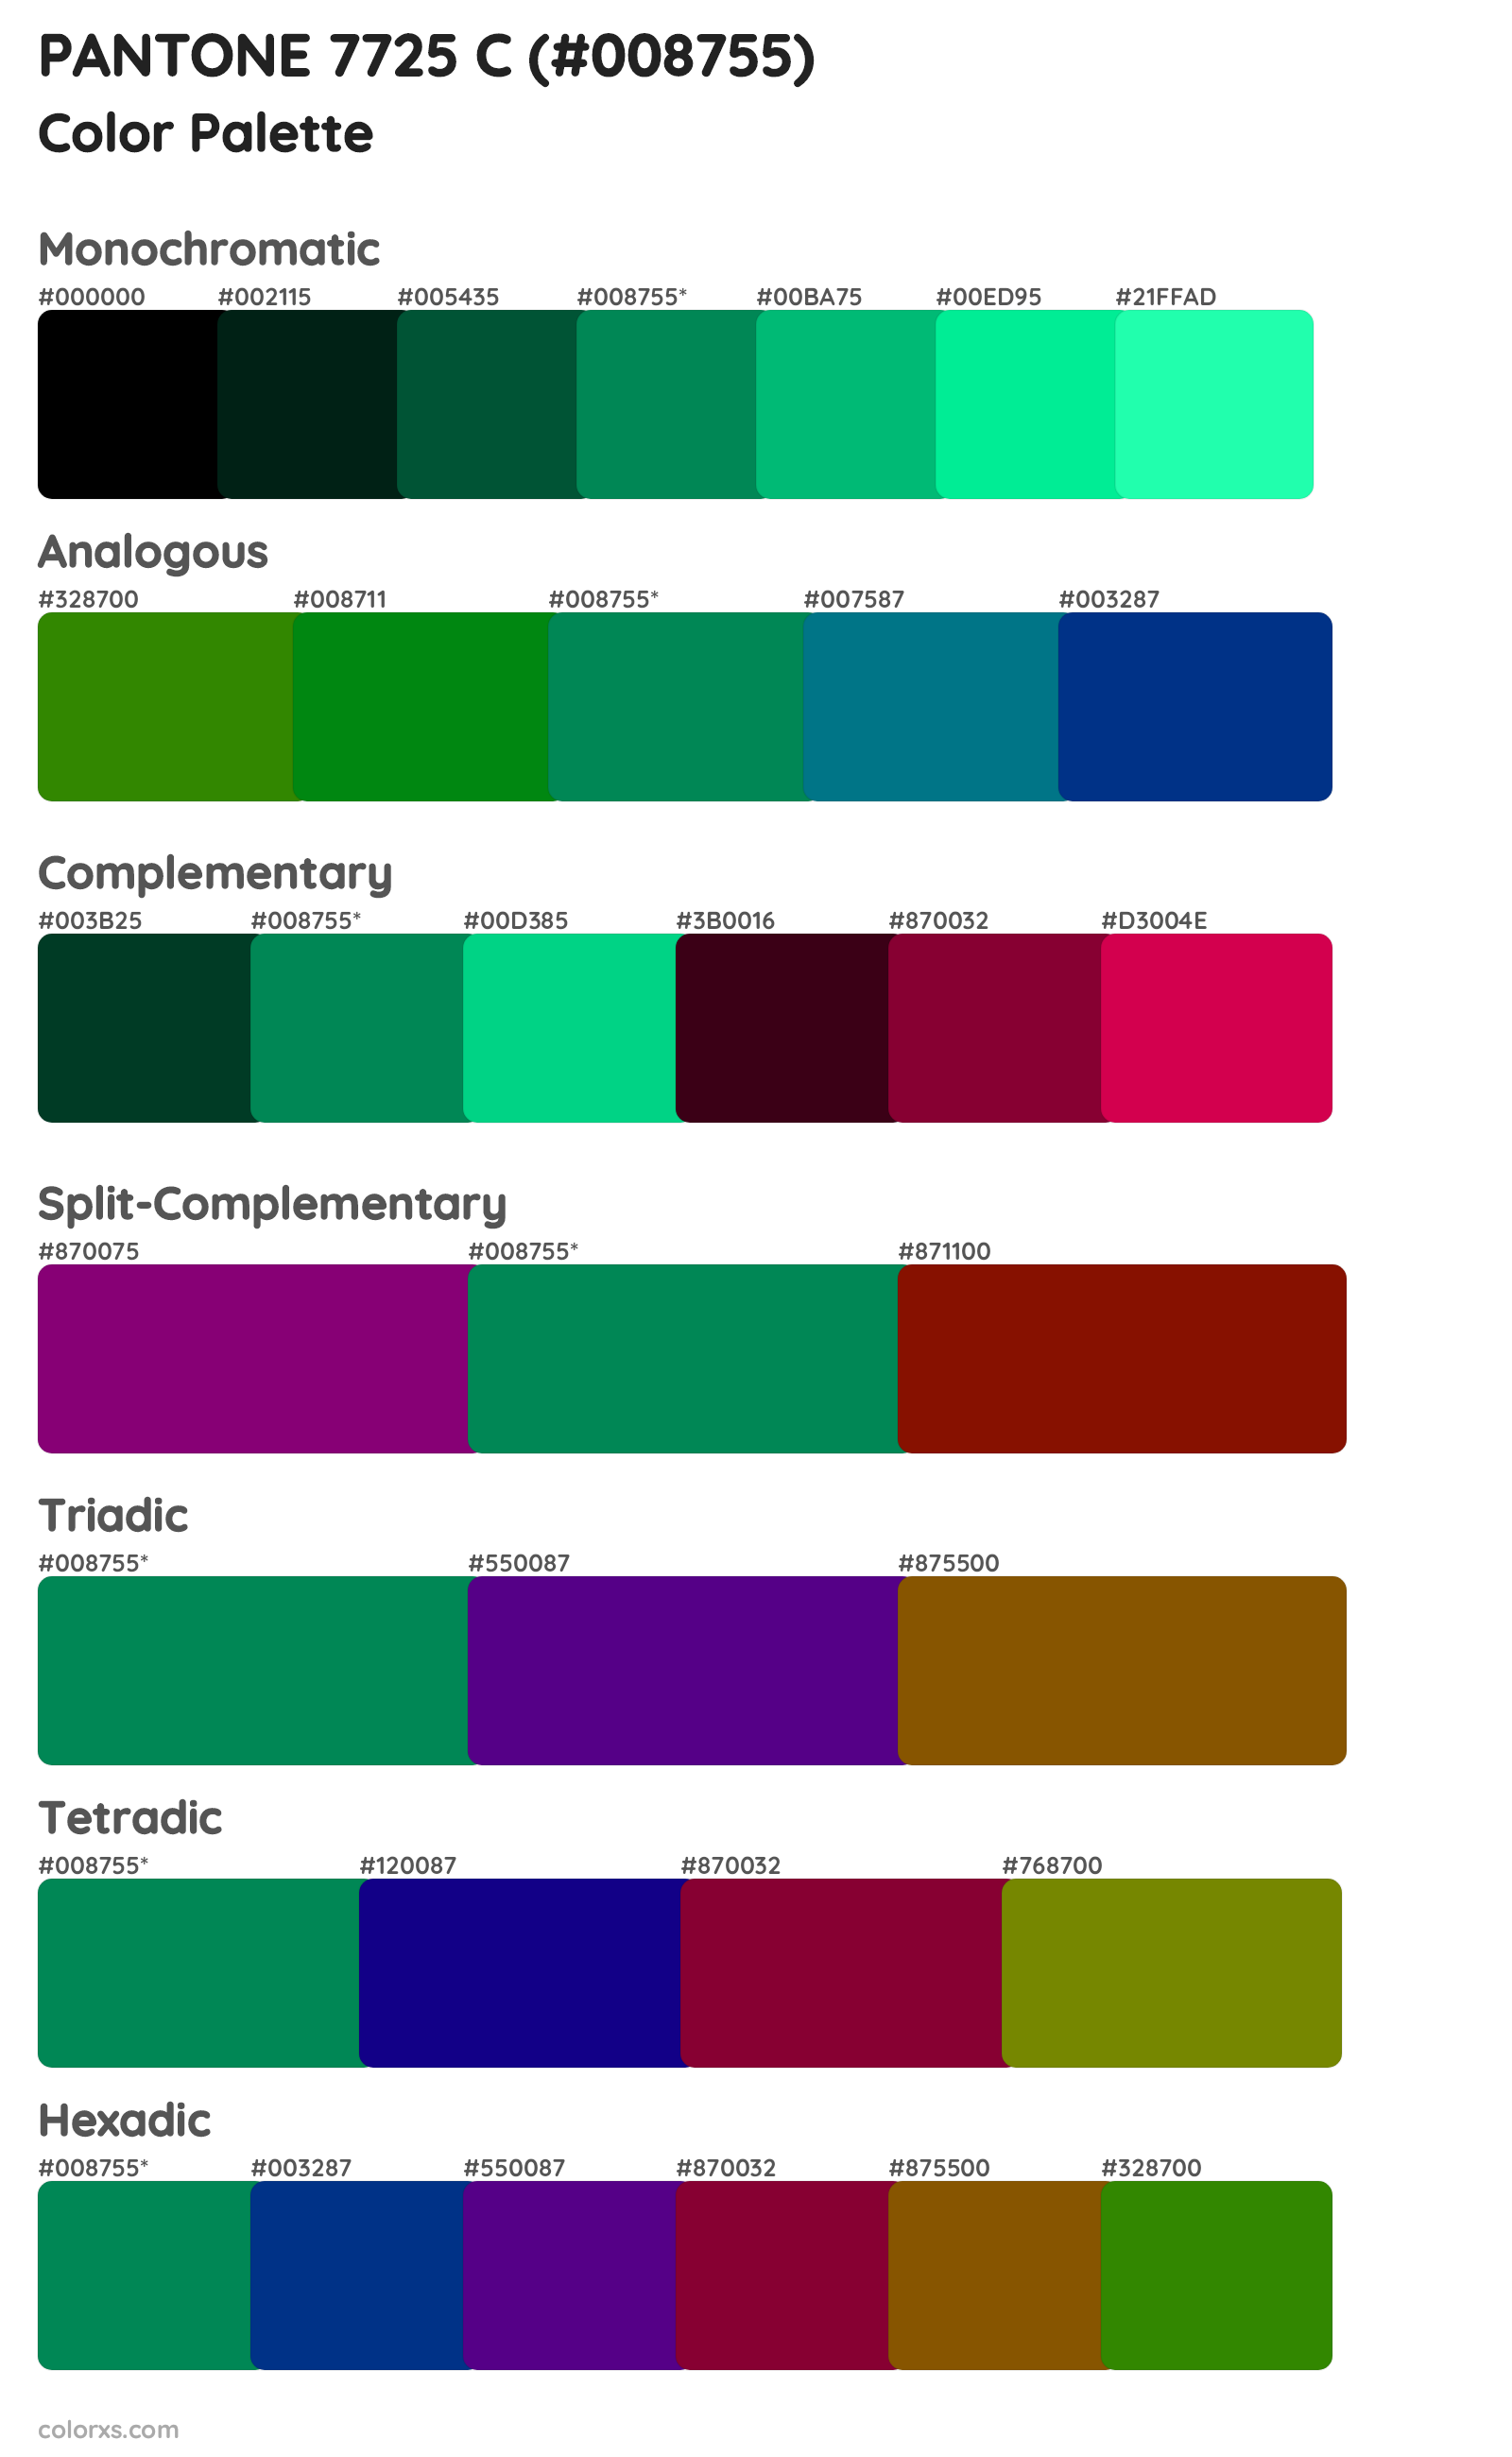 PANTONE 7725 C Color Scheme Palettes